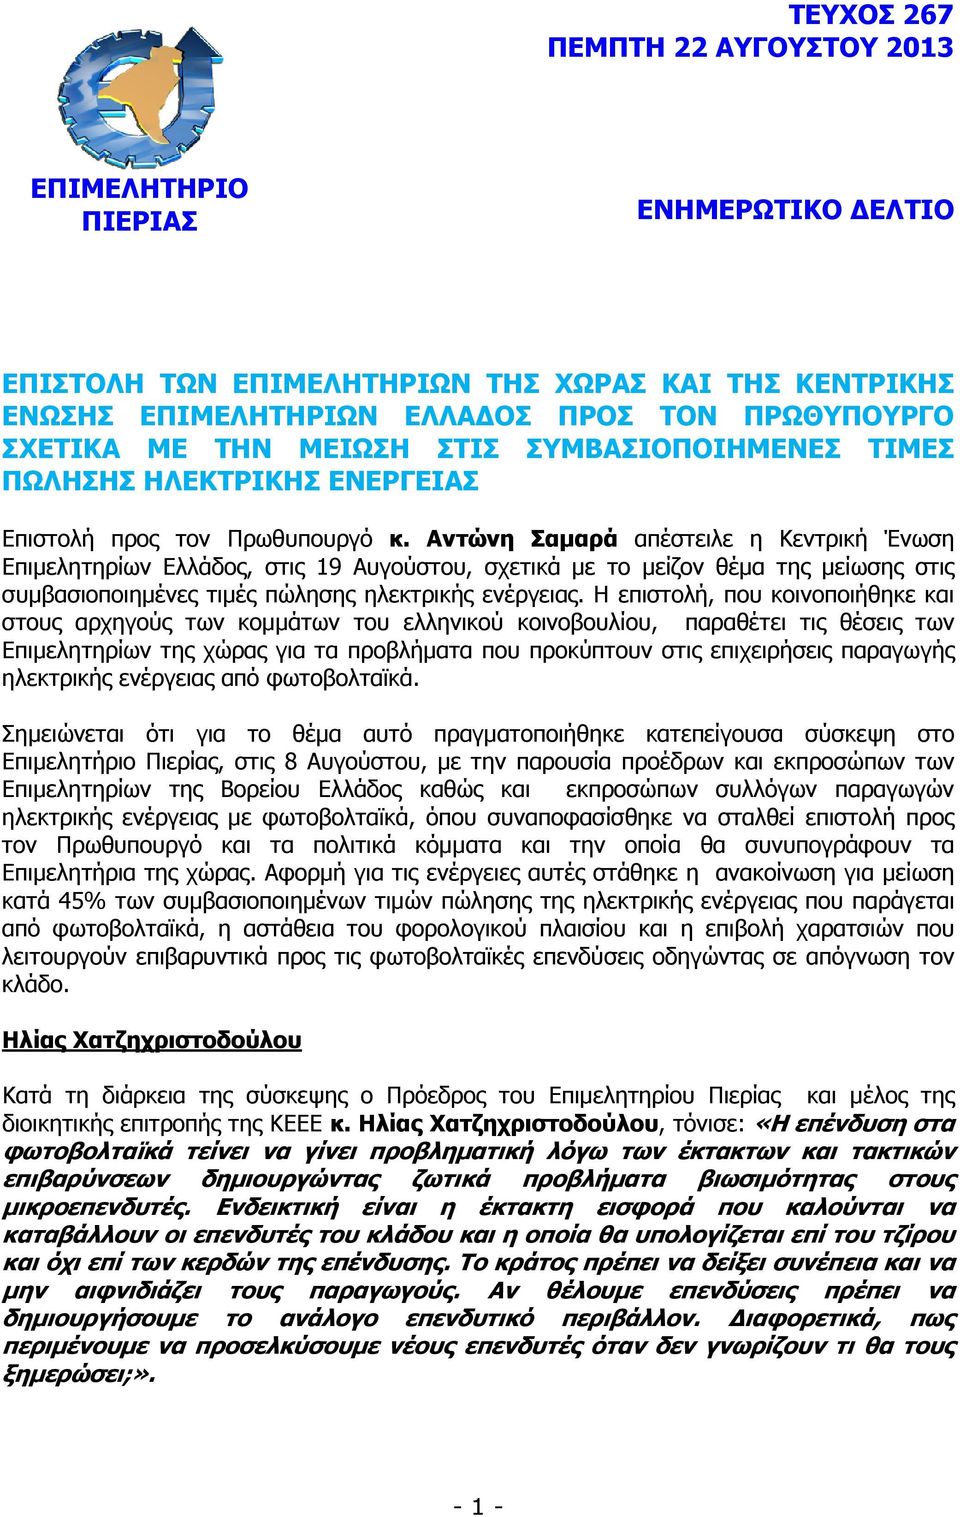 Αντώνη Σαµαρά απέστειλε η Κεντρική Ένωση Επιµελητηρίων Ελλάδος, στις 19 Αυγούστου, σχετικά µε το µείζον θέµα της µείωσης στις συµβασιοποιηµένες τιµές πώλησης ηλεκτρικής ενέργειας.